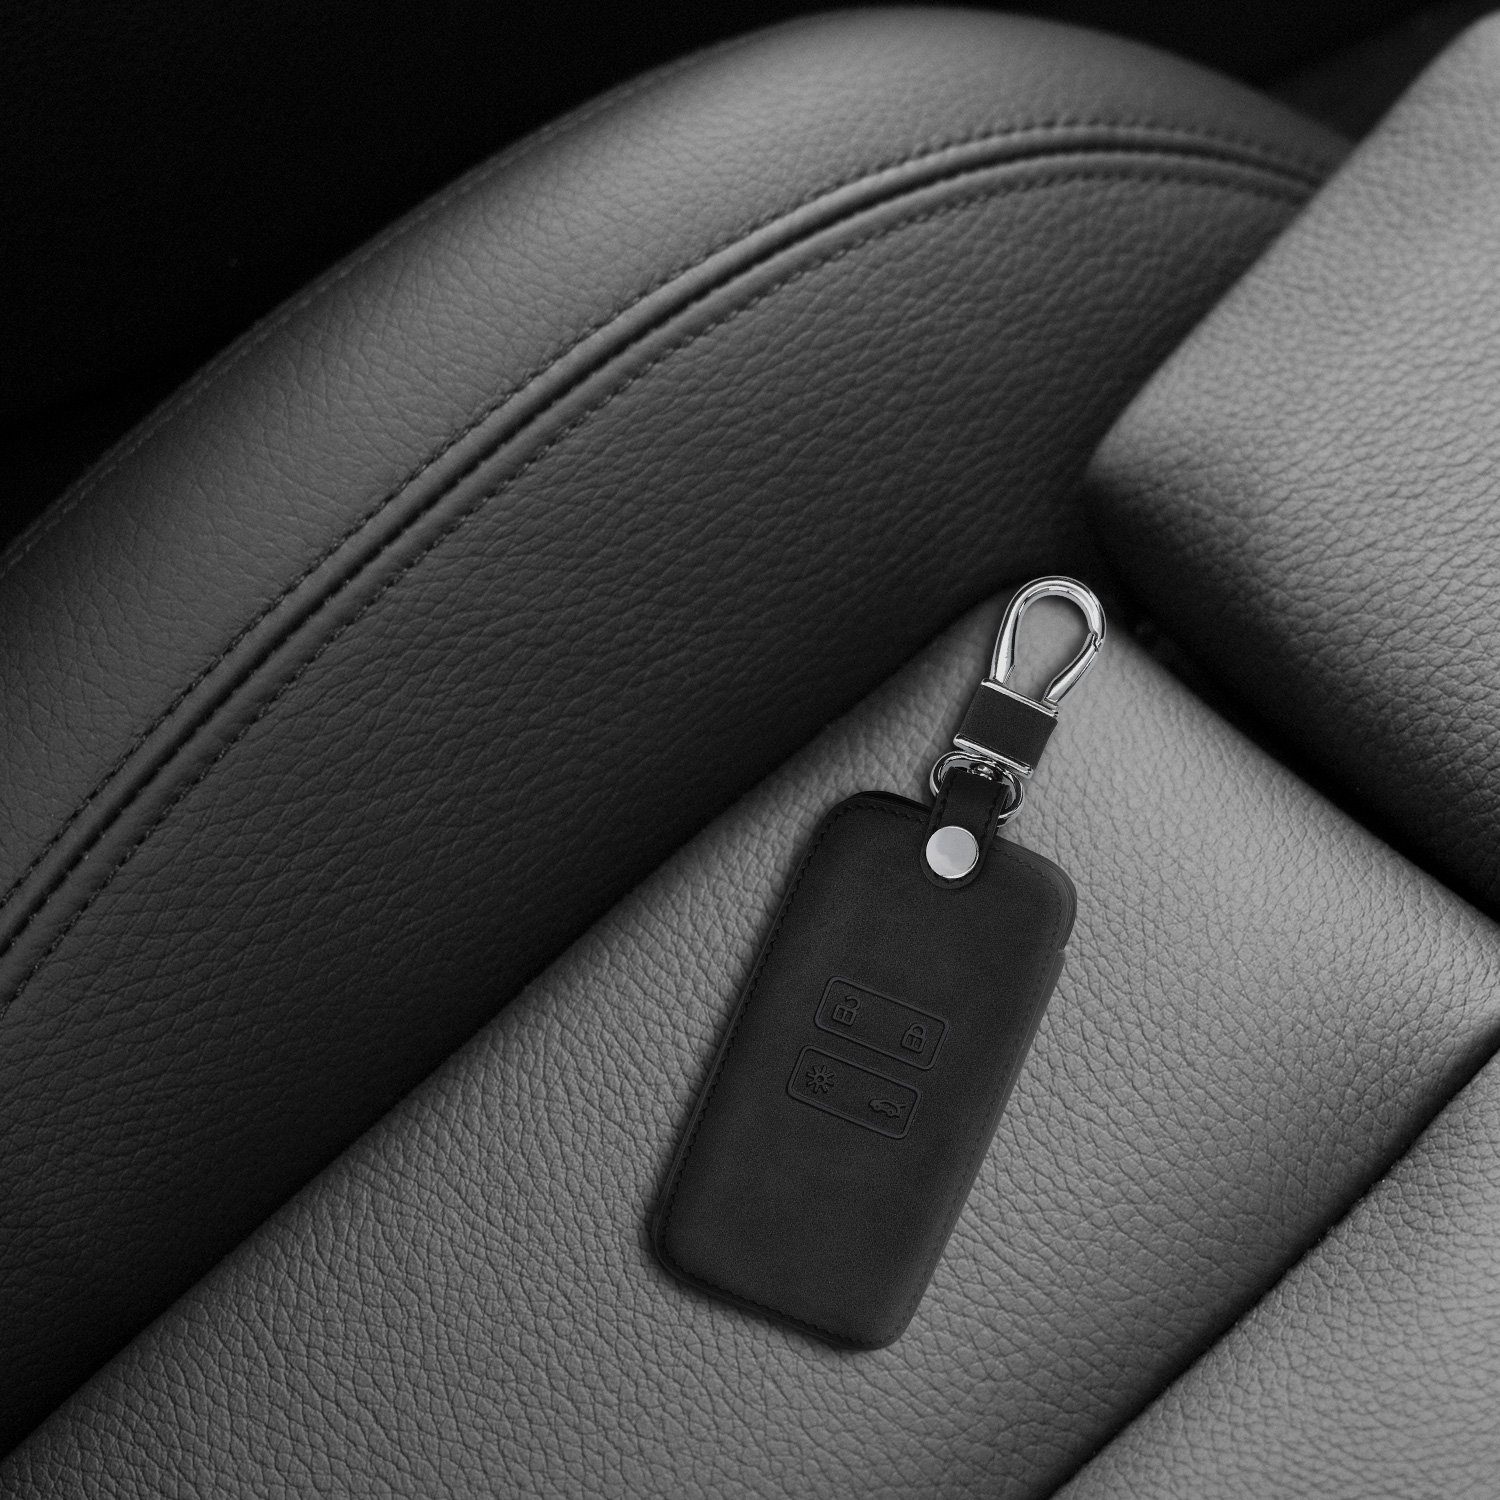 - Autoschlüssel Wildlederoptik Renault, Hülle Schlüsseltasche für kwmobile Cover Schutzhülle Schlüsselhülle Kunstleder Schwarz